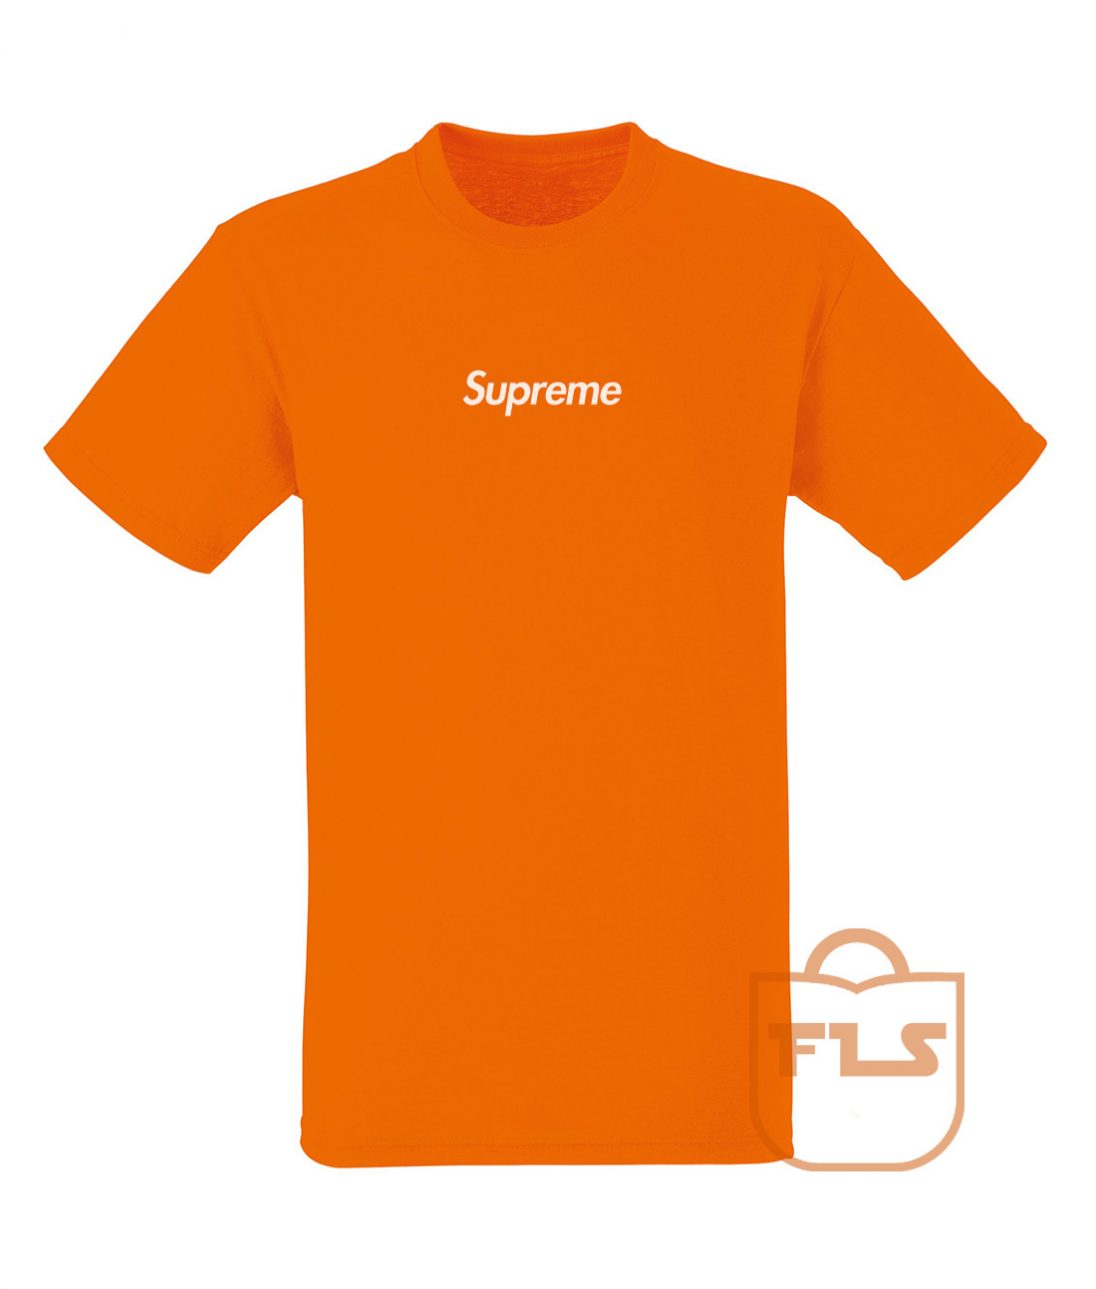 Supreme Orange Unisex T Shirt Size S M L XL XXL 3XL - FEROLOS.COM